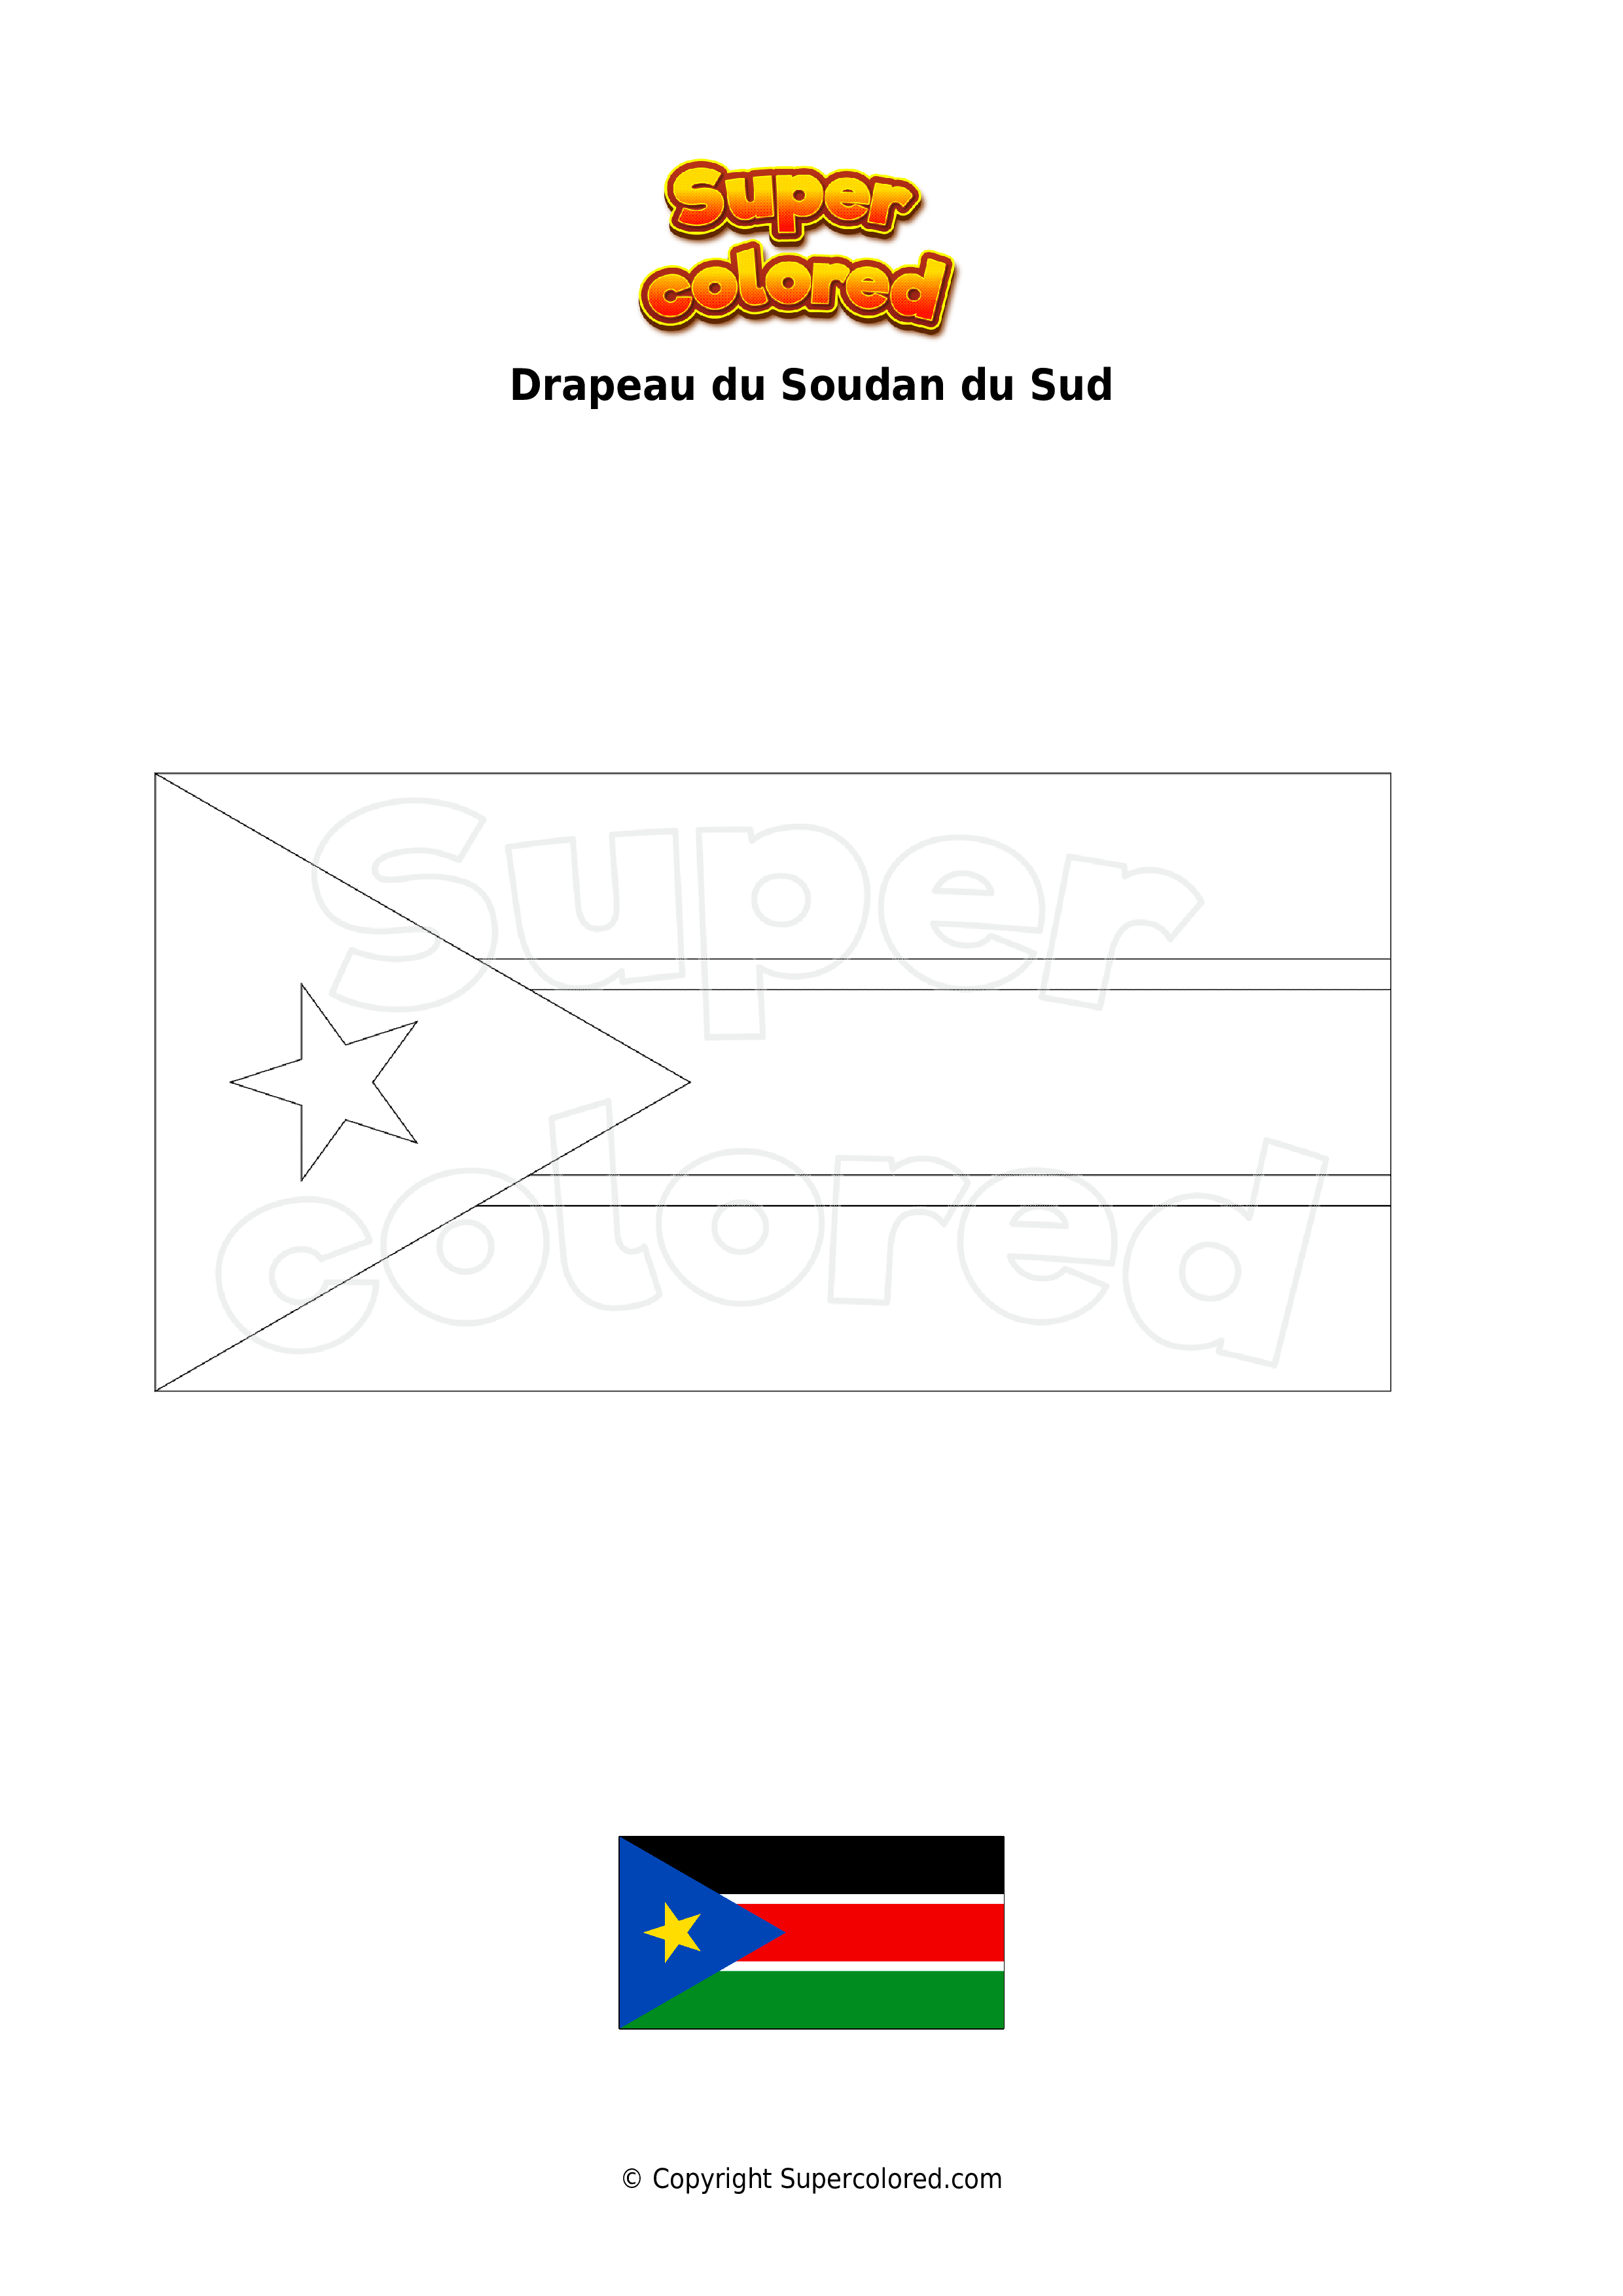 coloriage drapeau des bahamas supercolored com super doraemon